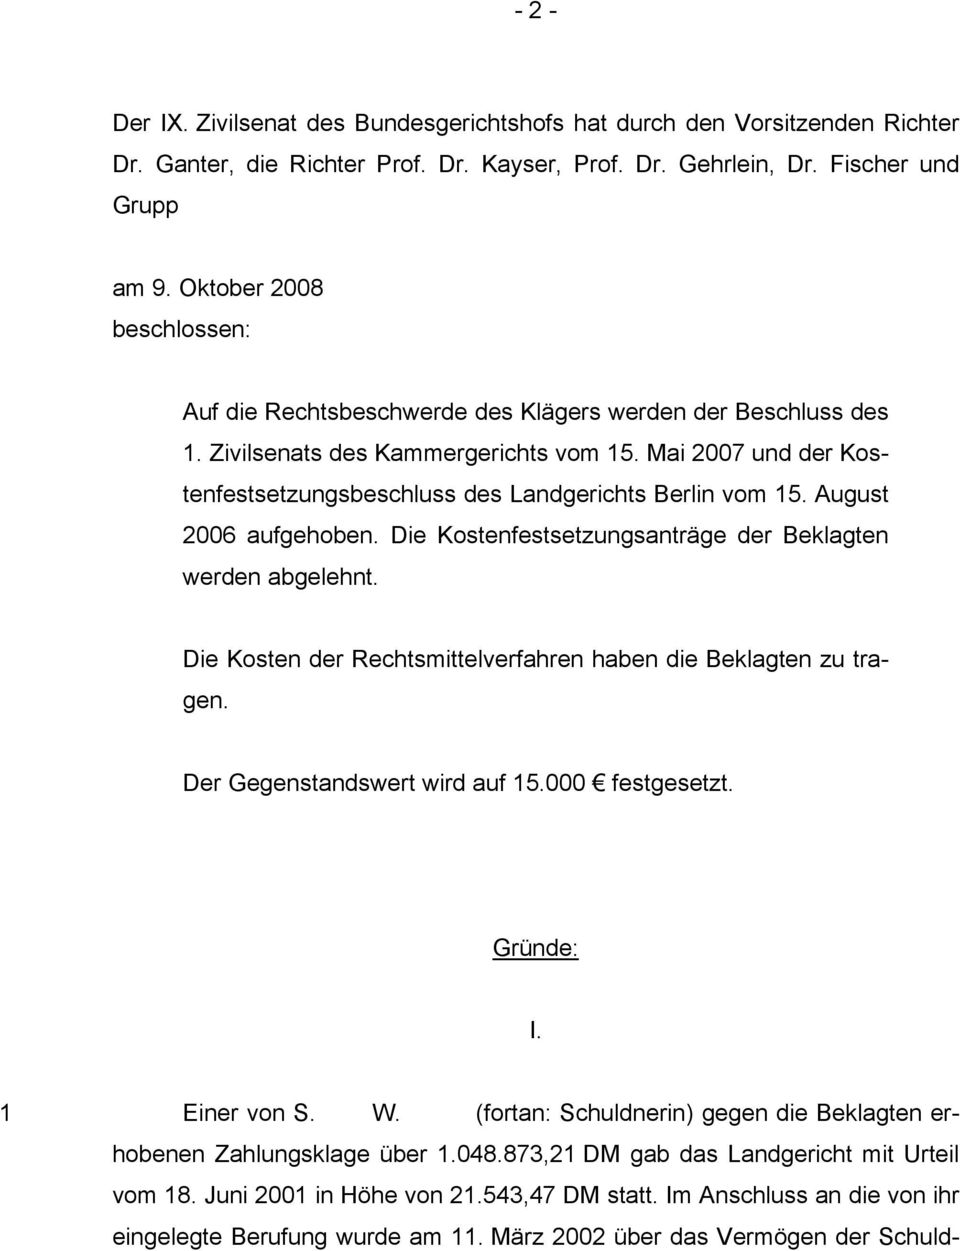 Mai 2007 und der Kostenfestsetzungsbeschluss des Landgerichts Berlin vom 15. August 2006 aufgehoben. Die Kostenfestsetzungsanträge der Beklagten werden abgelehnt.